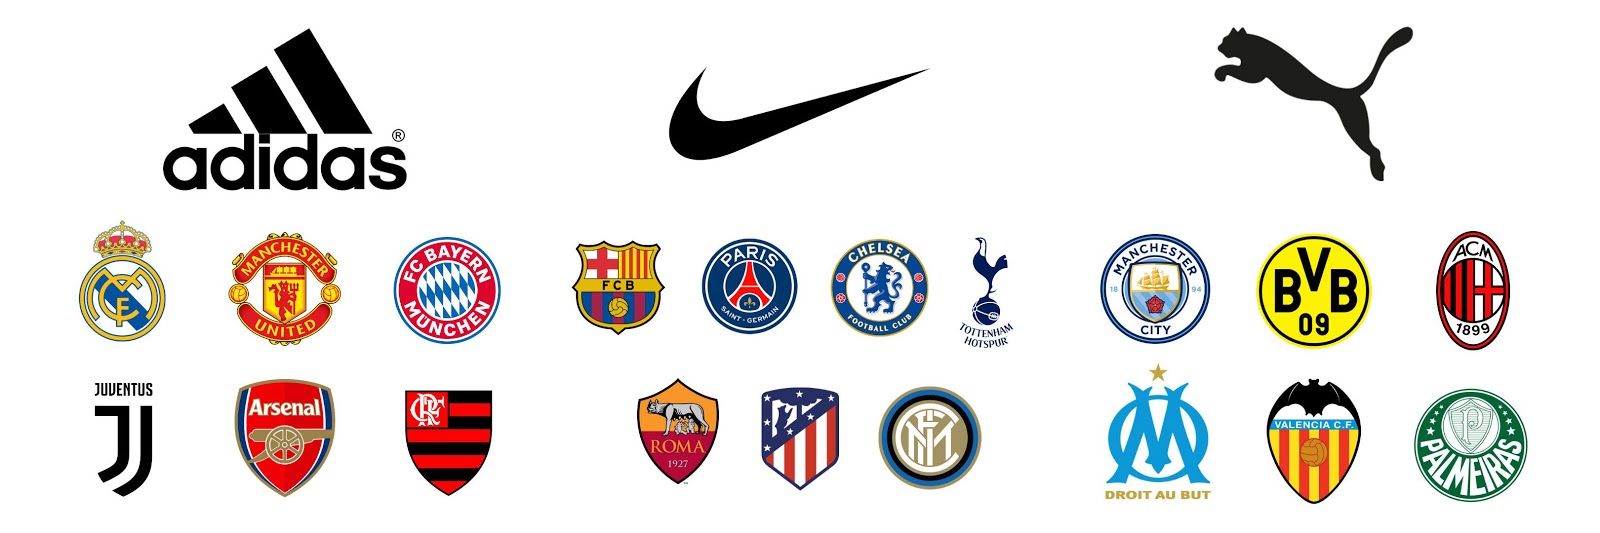 adidas football teams